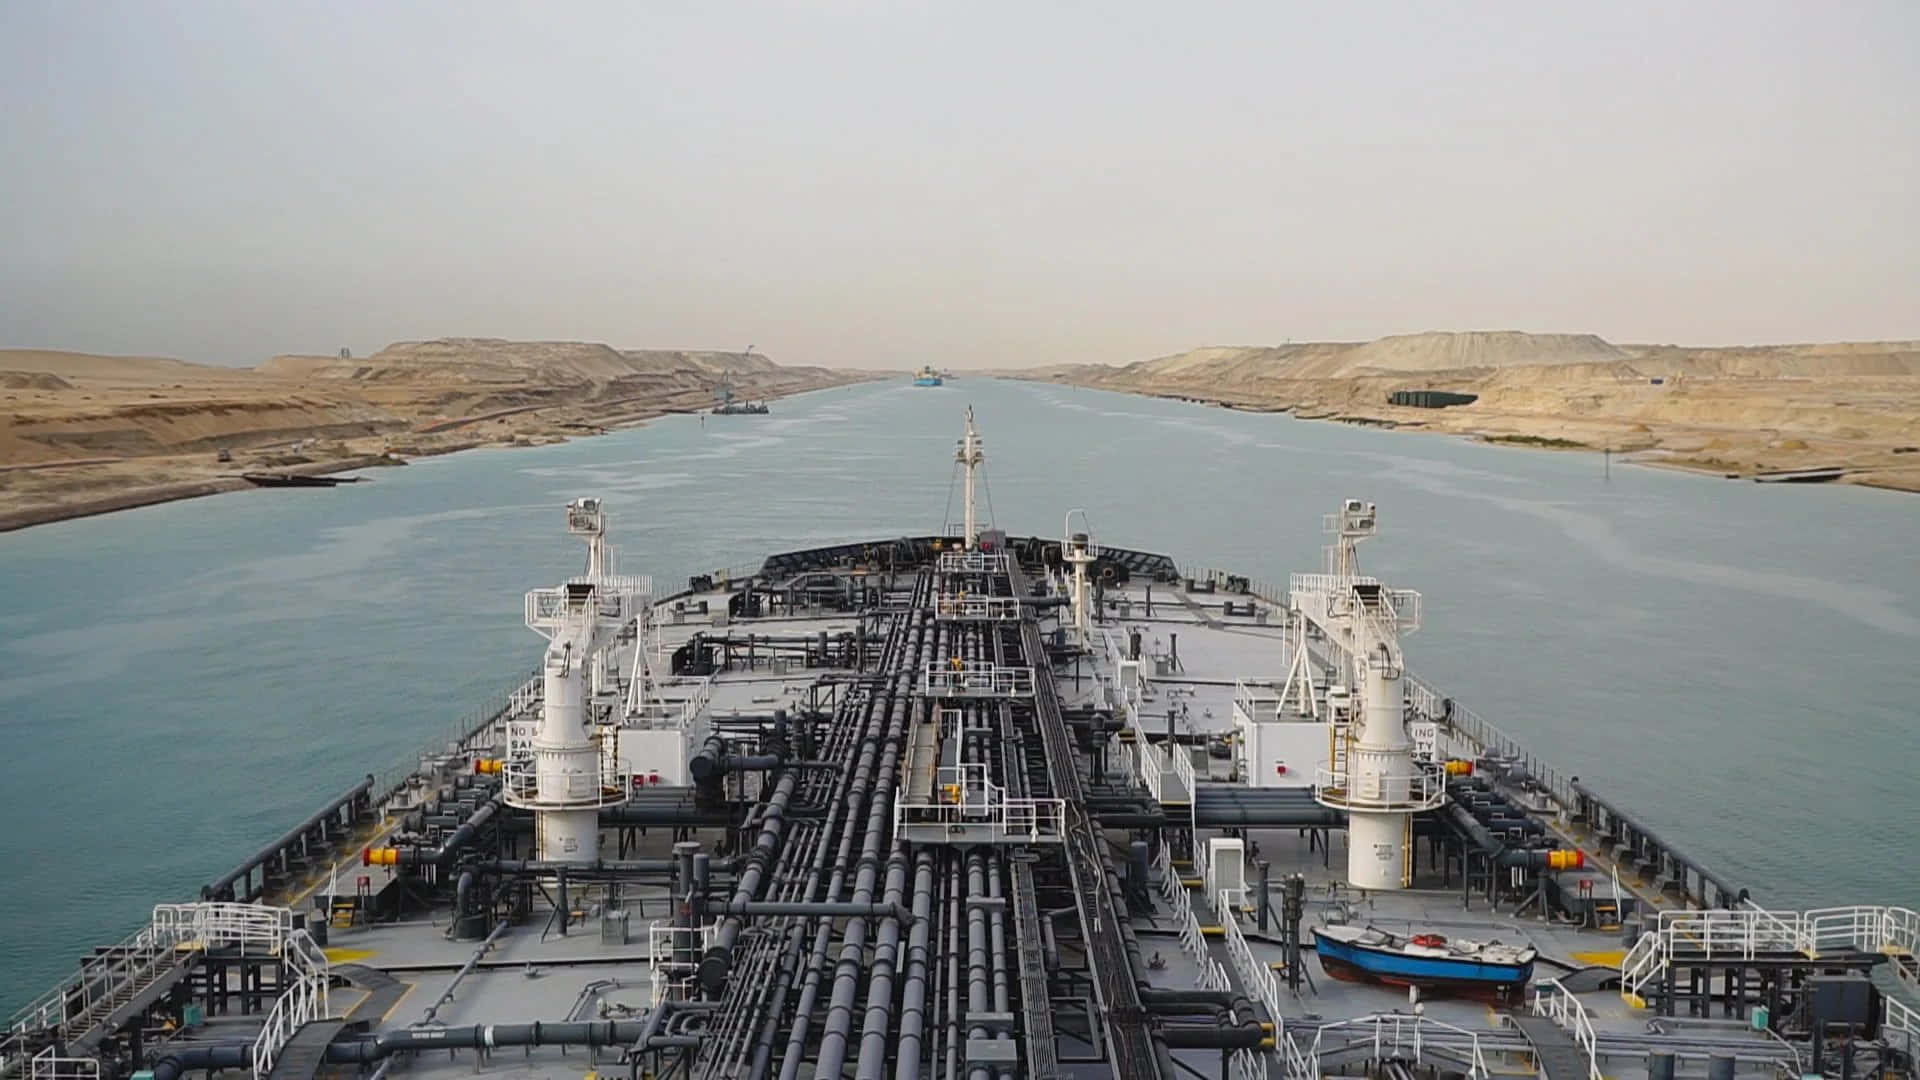 Imagendel Canal De Suez Industrial